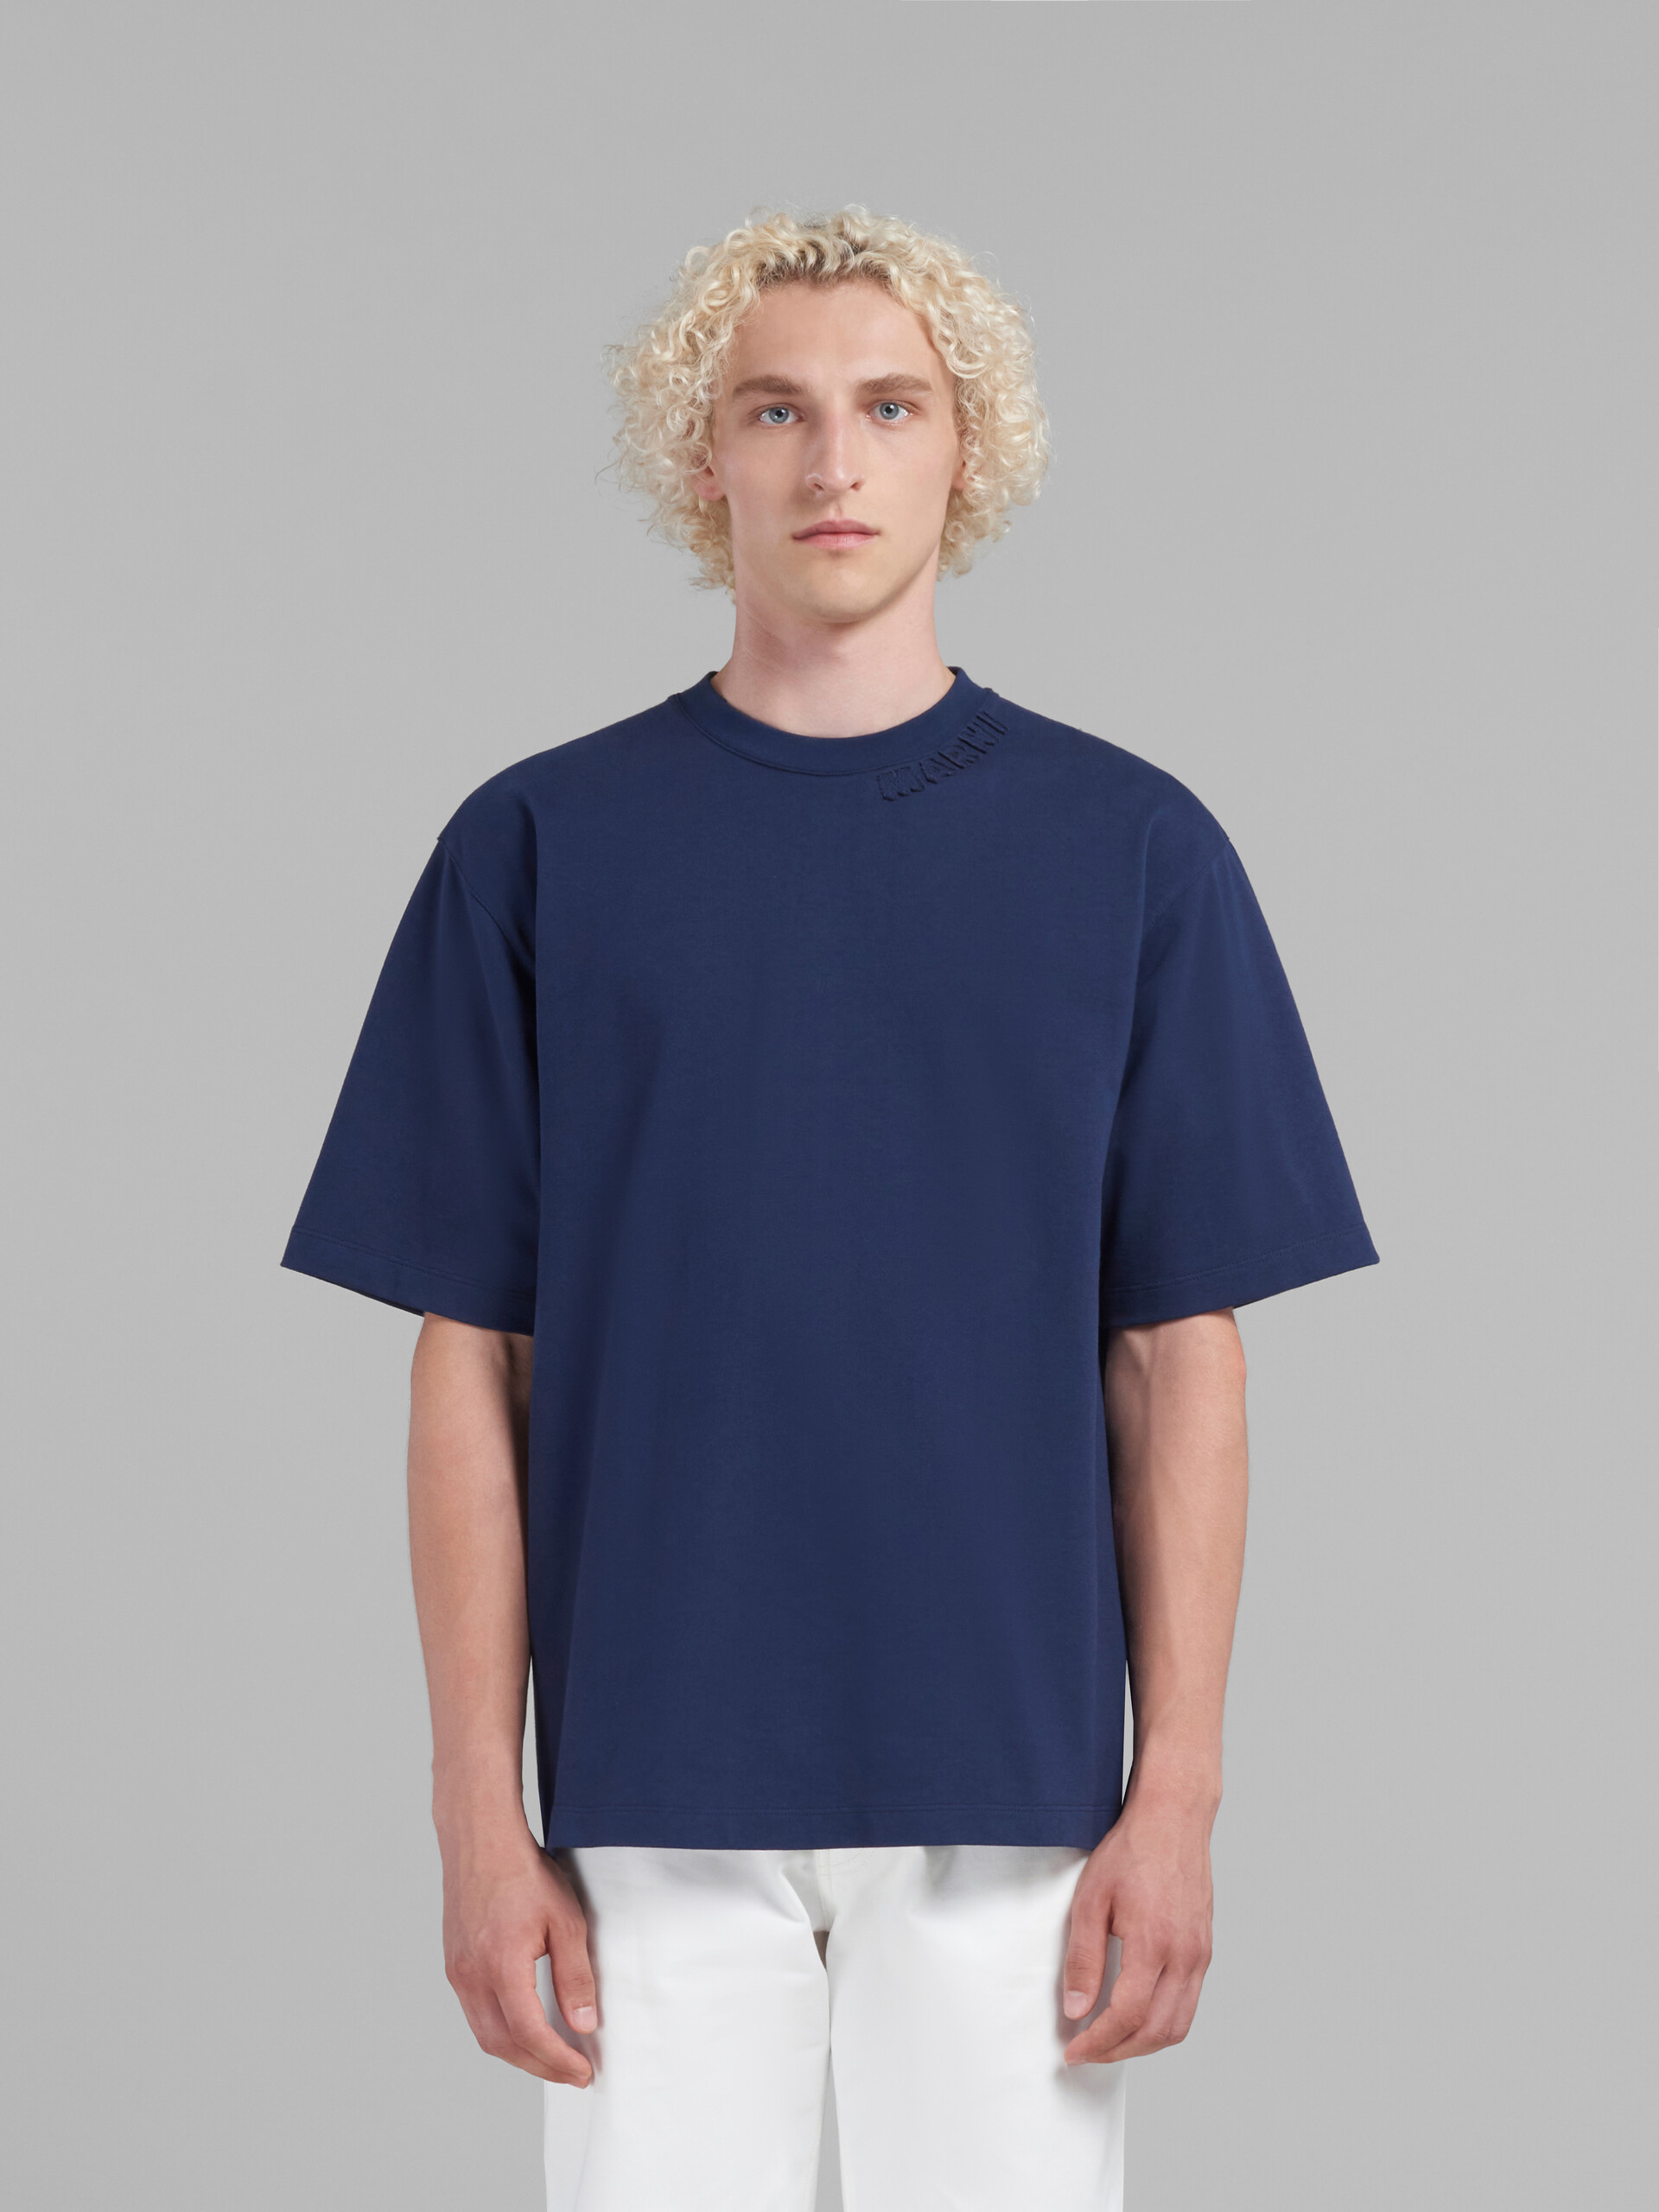 Camiseta oversize azul de algodón ecológico con parches Marni - Camisetas - Image 2